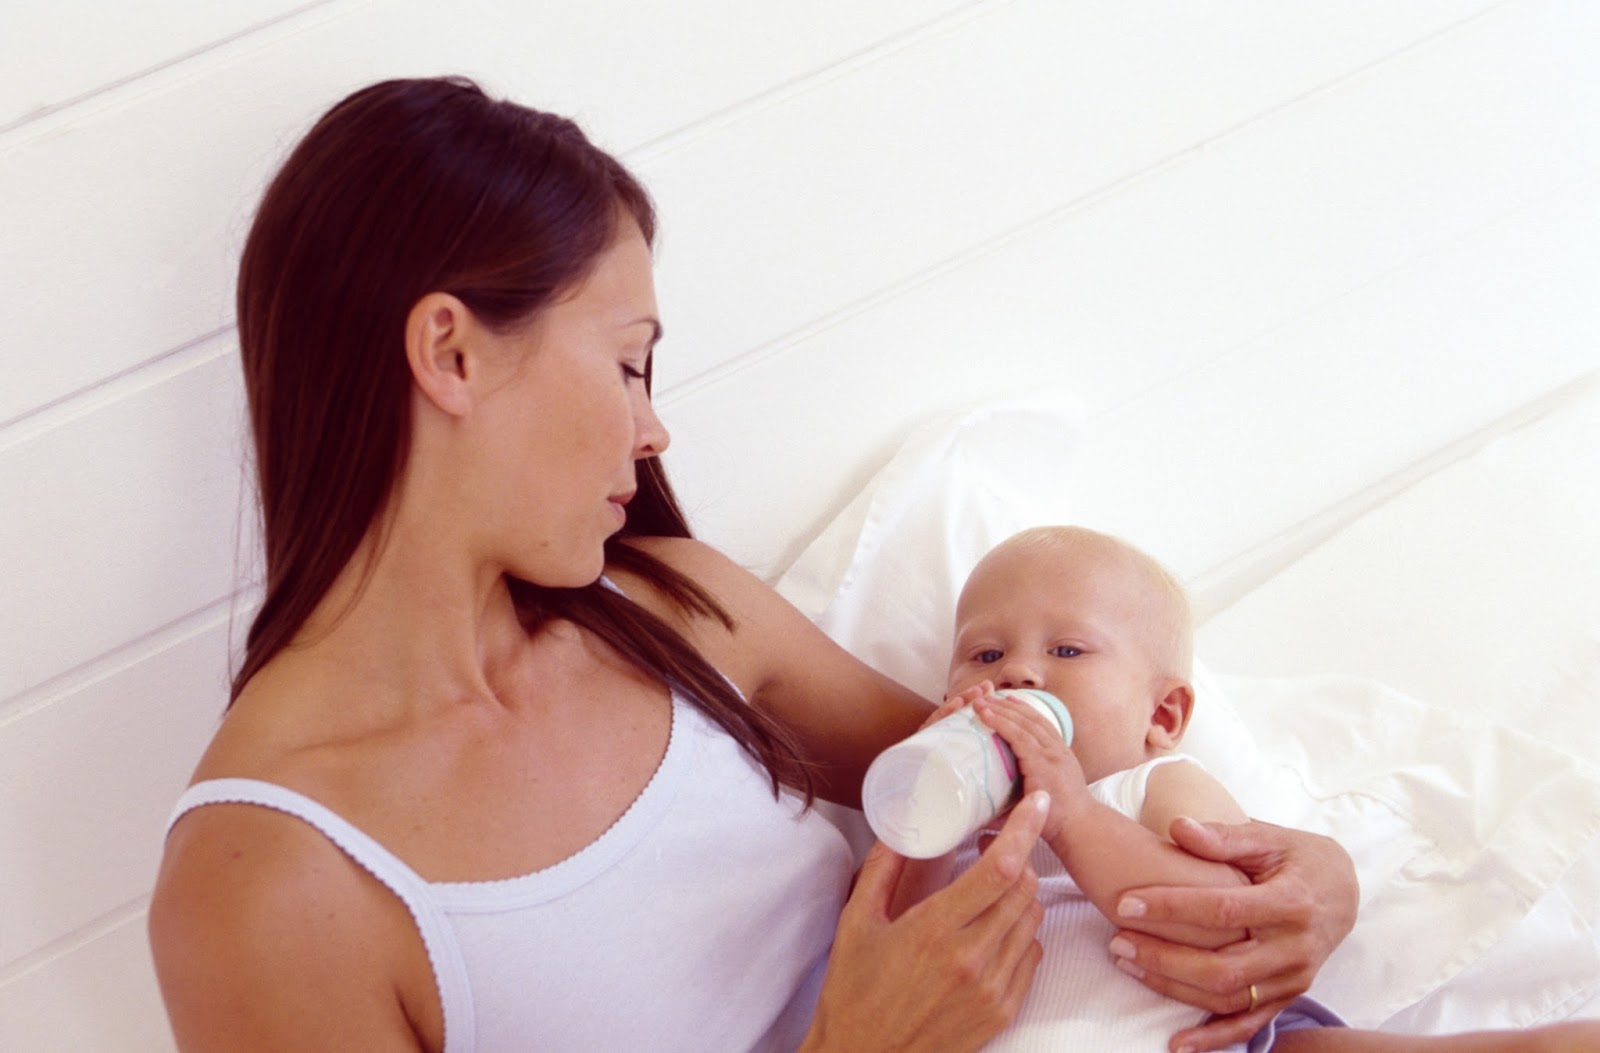 5 нестандартных способов применения грудного молока